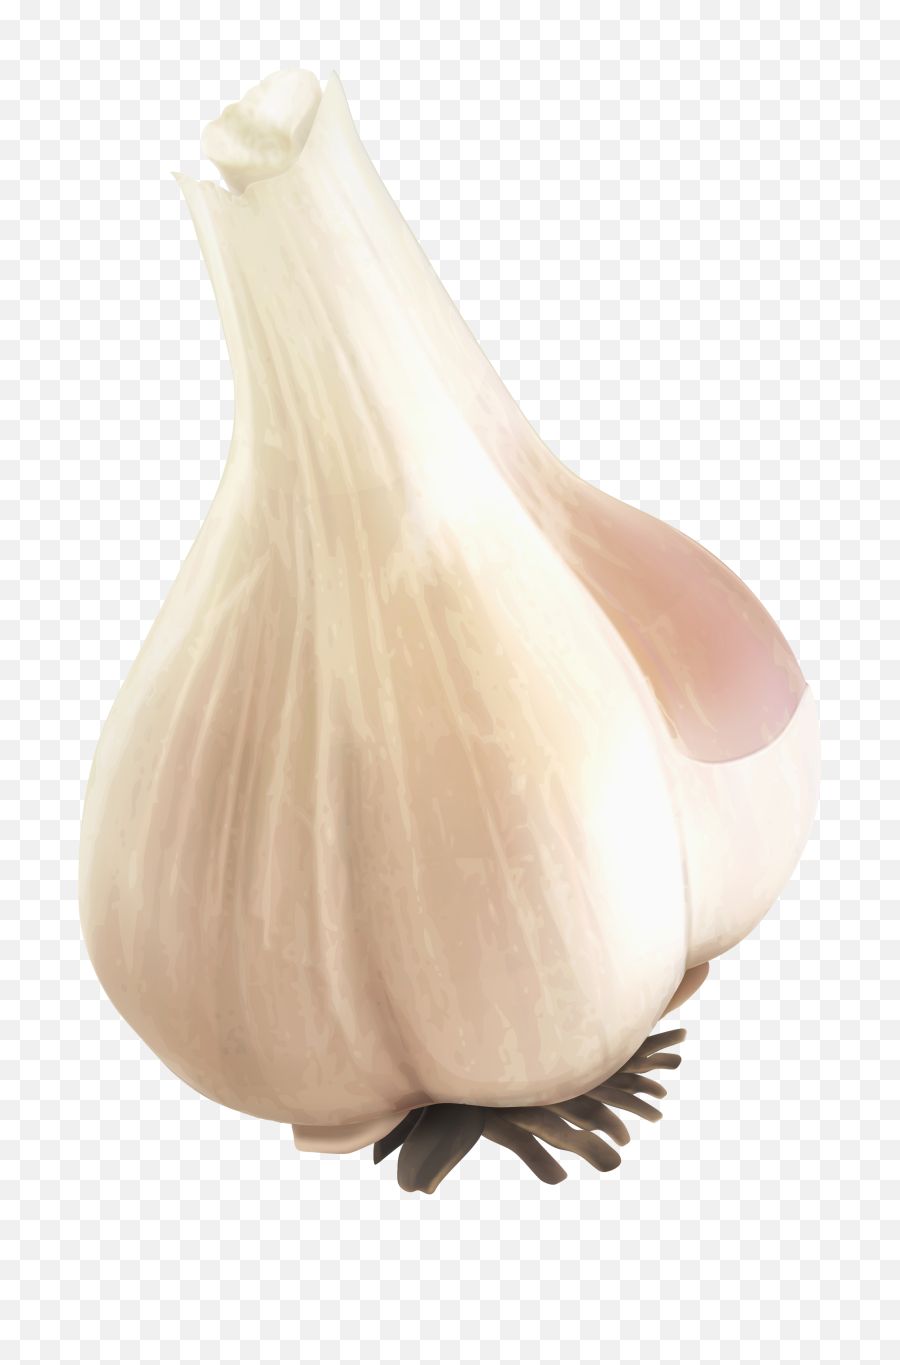 Garlic Png Image - Garlic Desain,Garlic Transparent Background